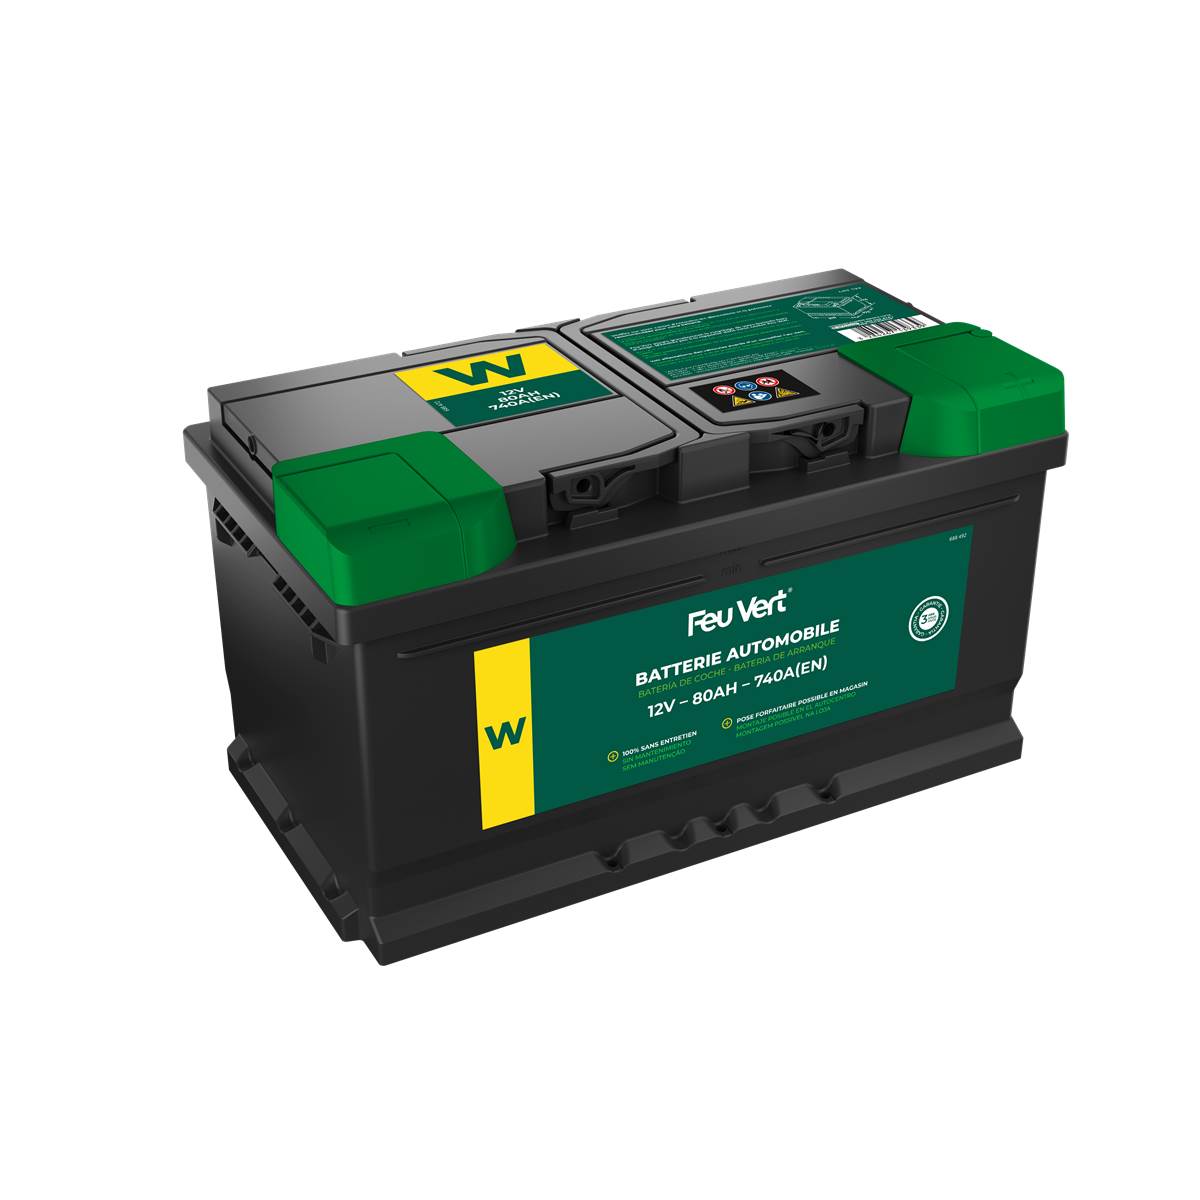 Batterie Voiture Feu Vert W - 80ah / 740a - 12v